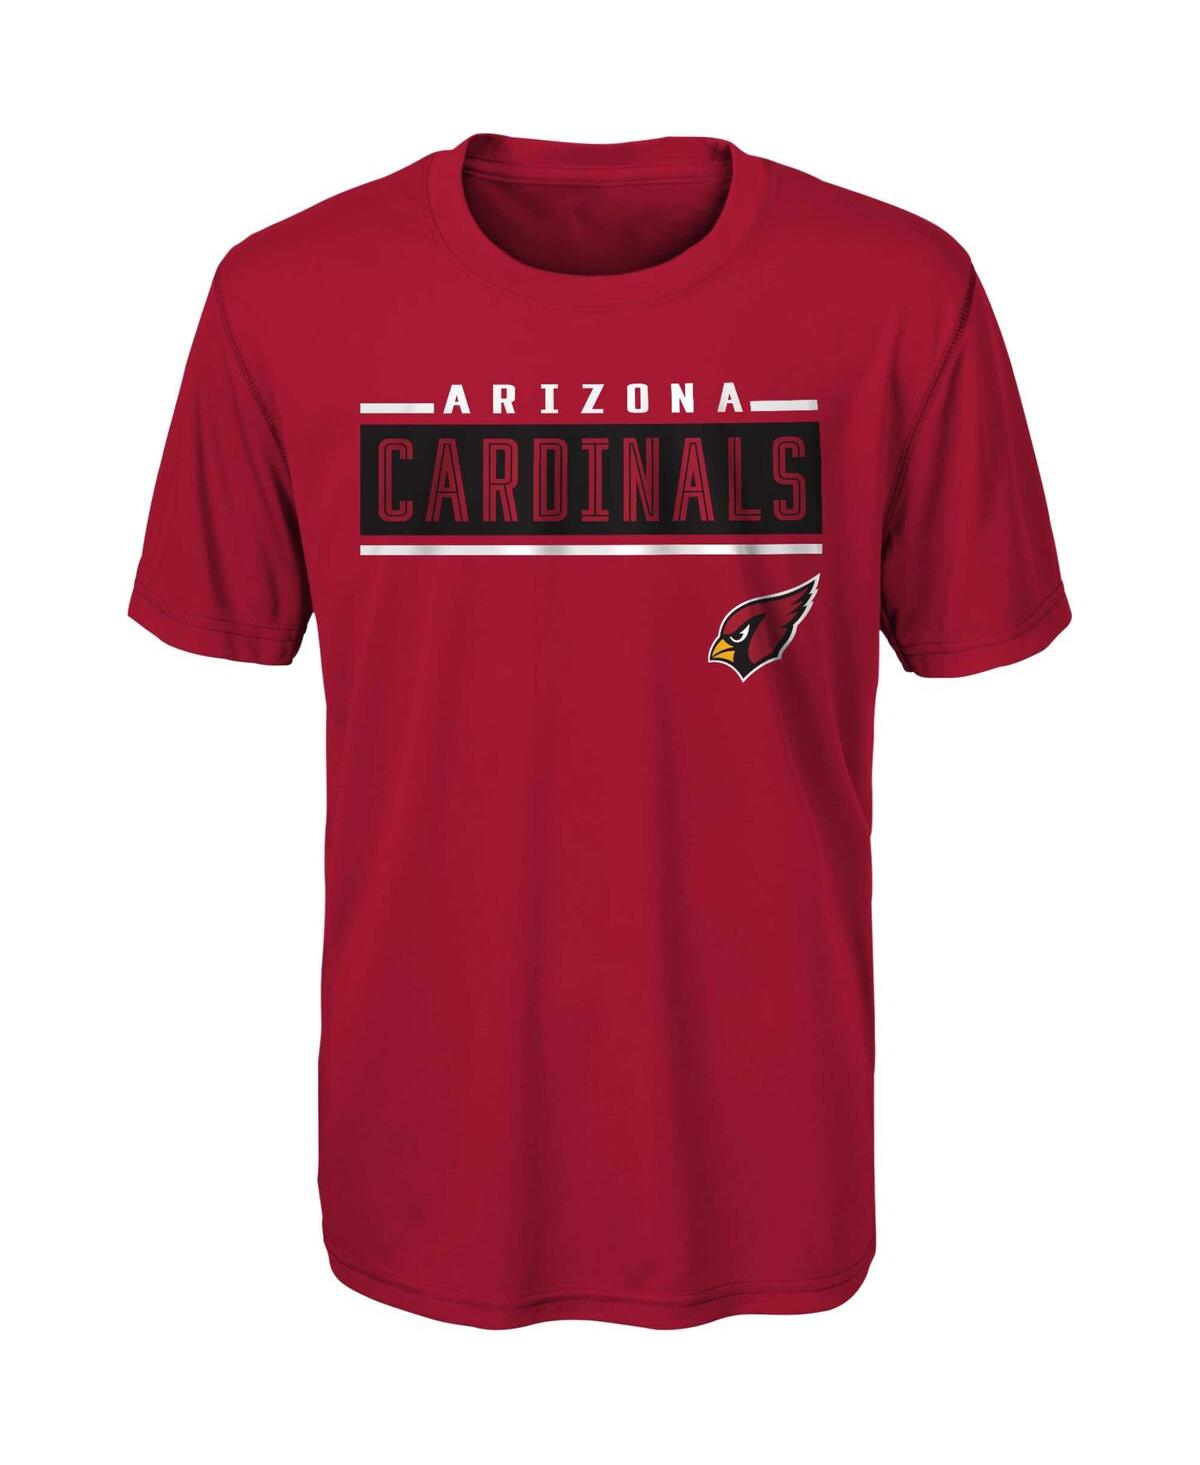 Outerstuff Kids' Big Boys Cardinal Arizona Cardinals Amped Up T-shirt